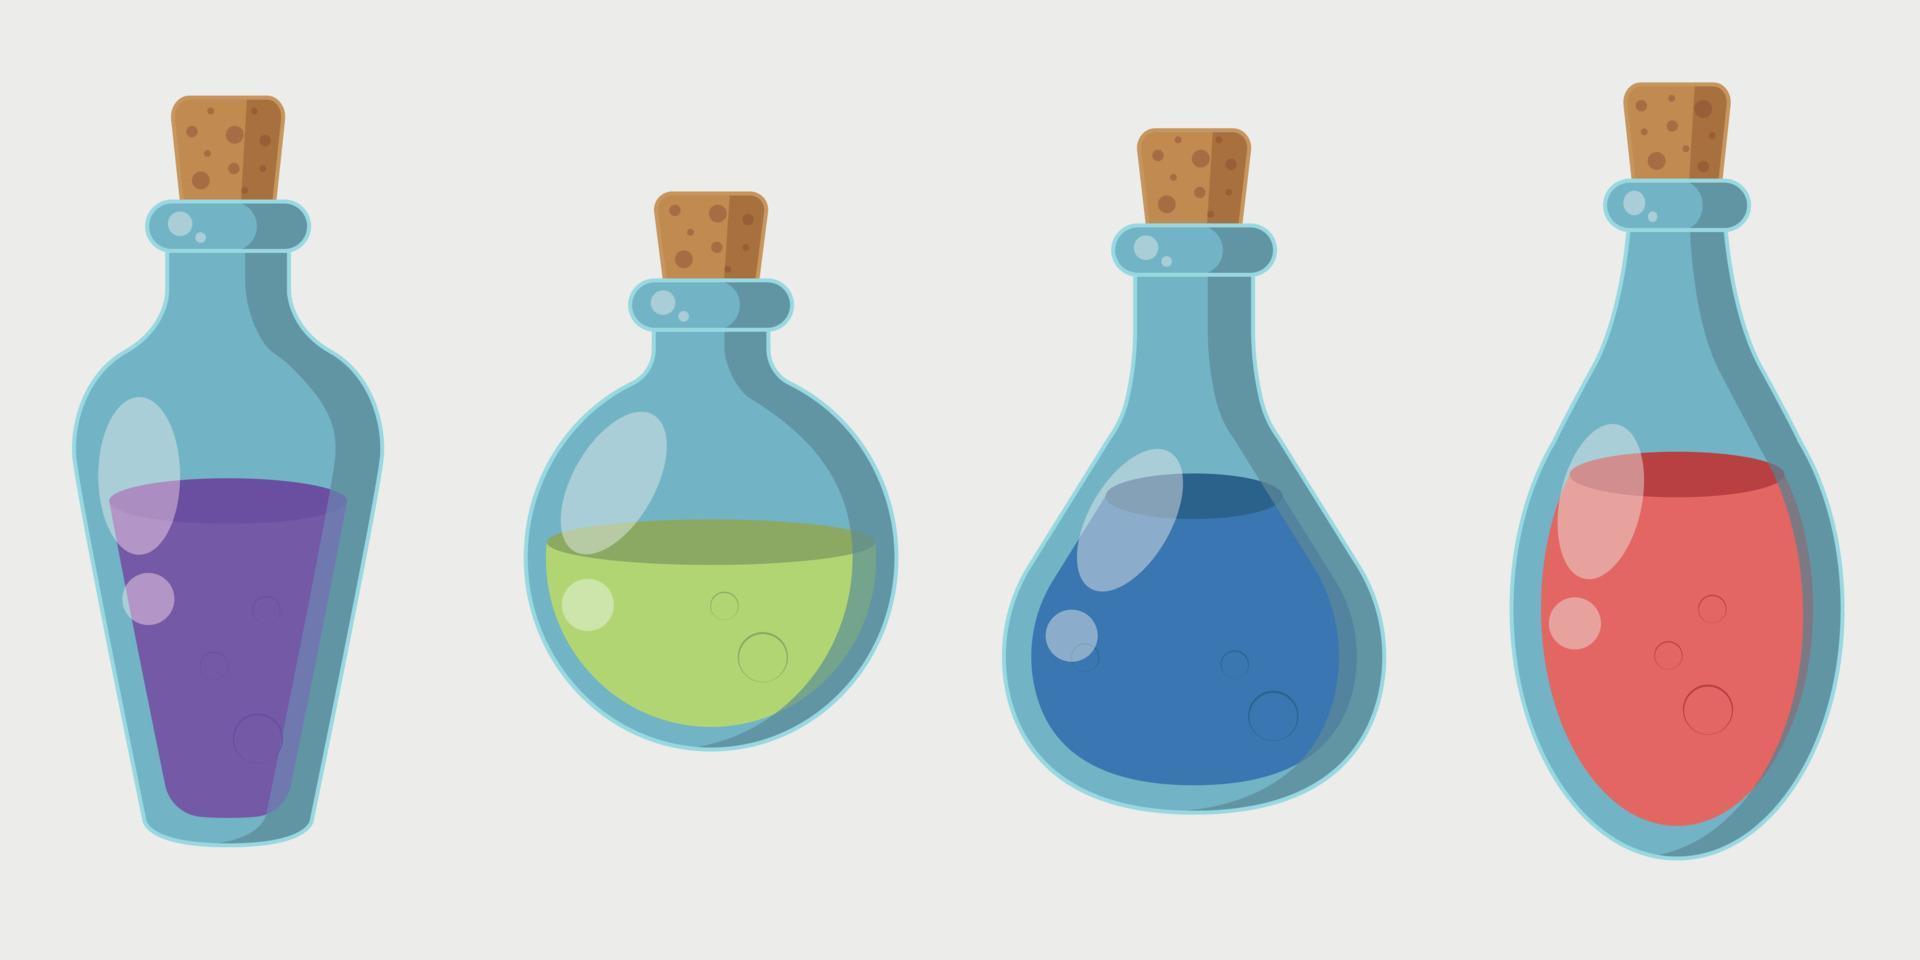 conjunto de botellas de pociones. líquido en frasco de vidrio al estilo de las caricaturas. frascos con elixir rojo, azul, verde y morado. ilustración vectorial en estilo plano. vector